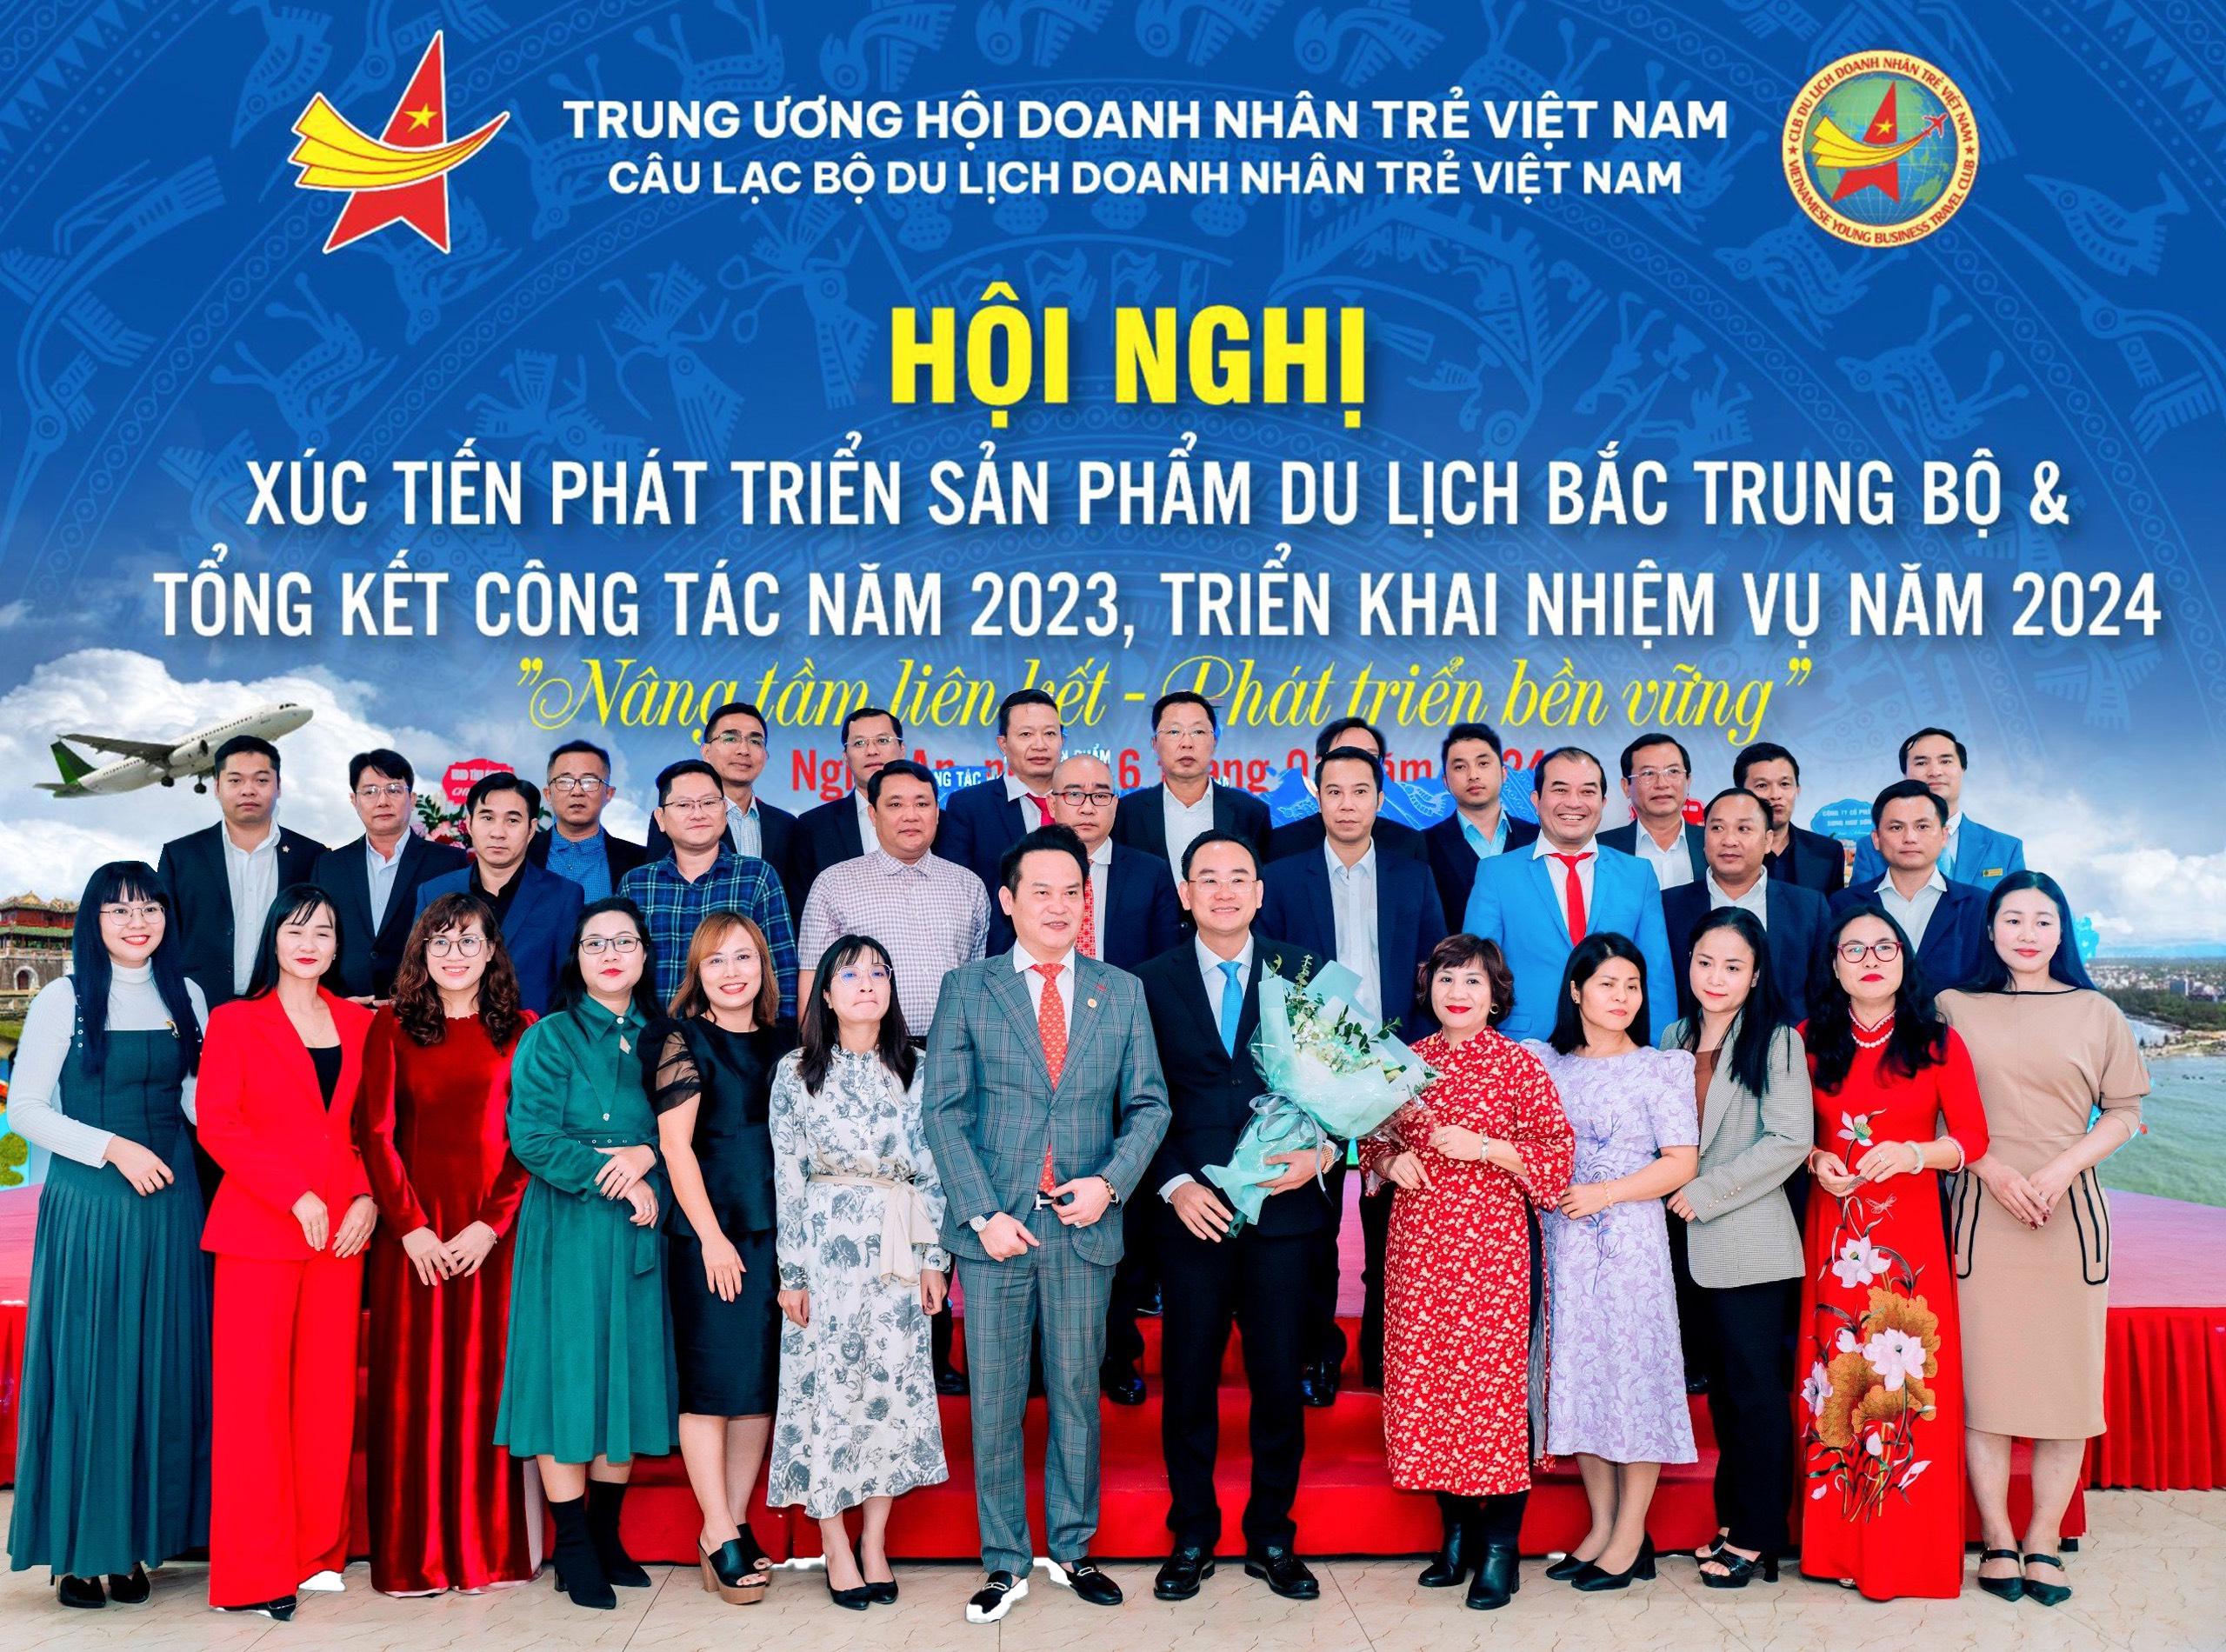 Thơ tặng CLB du lịch doanh nhân trẻ Việt Nam